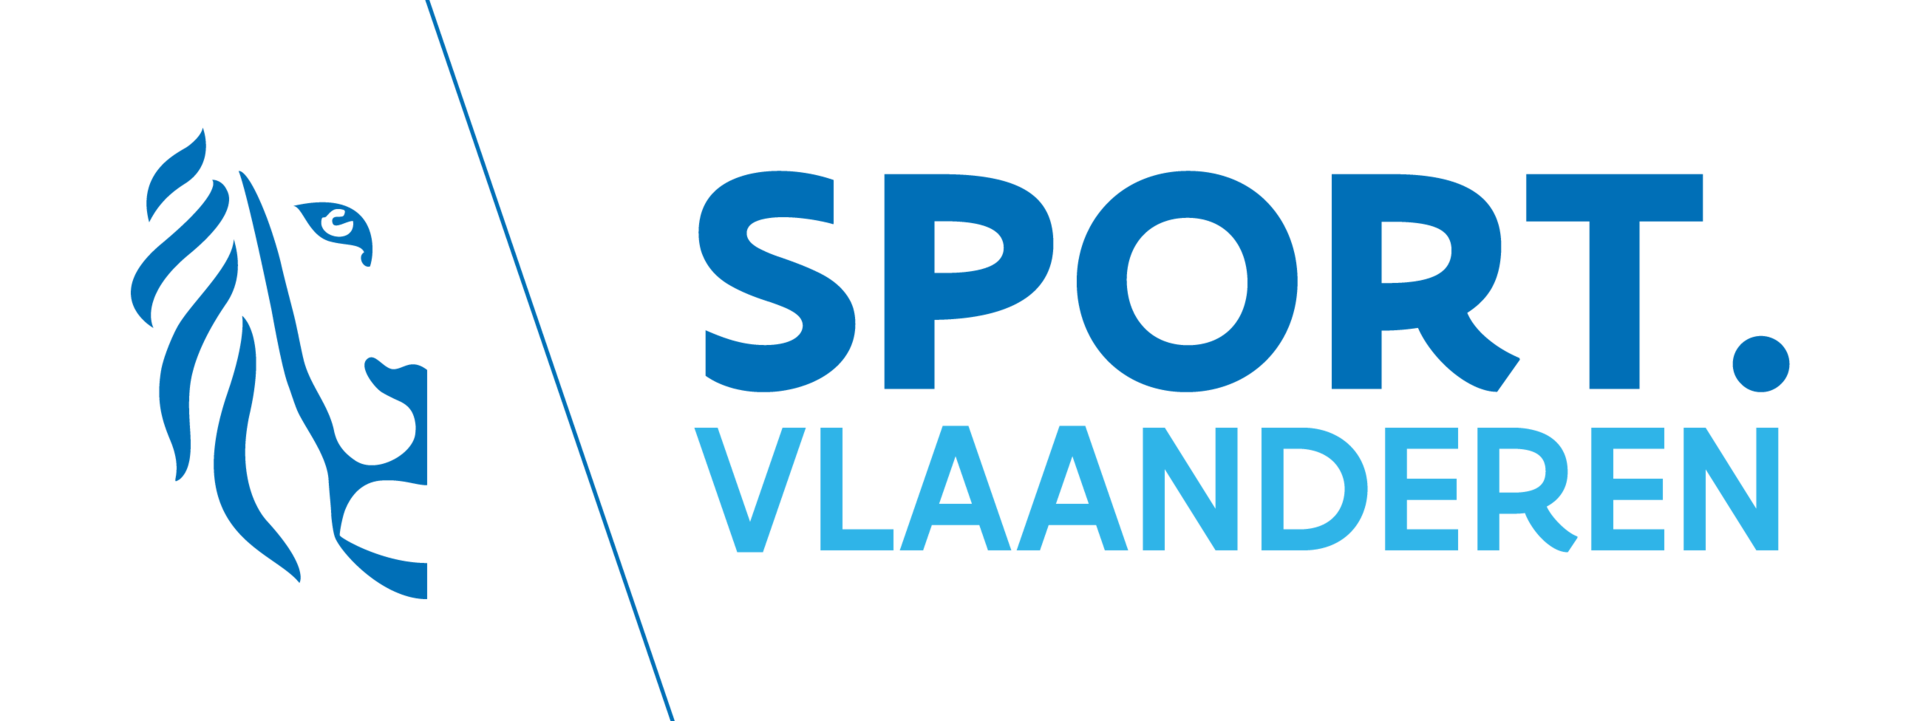 images/logo-sport-vlaanderen-transparant-1.png